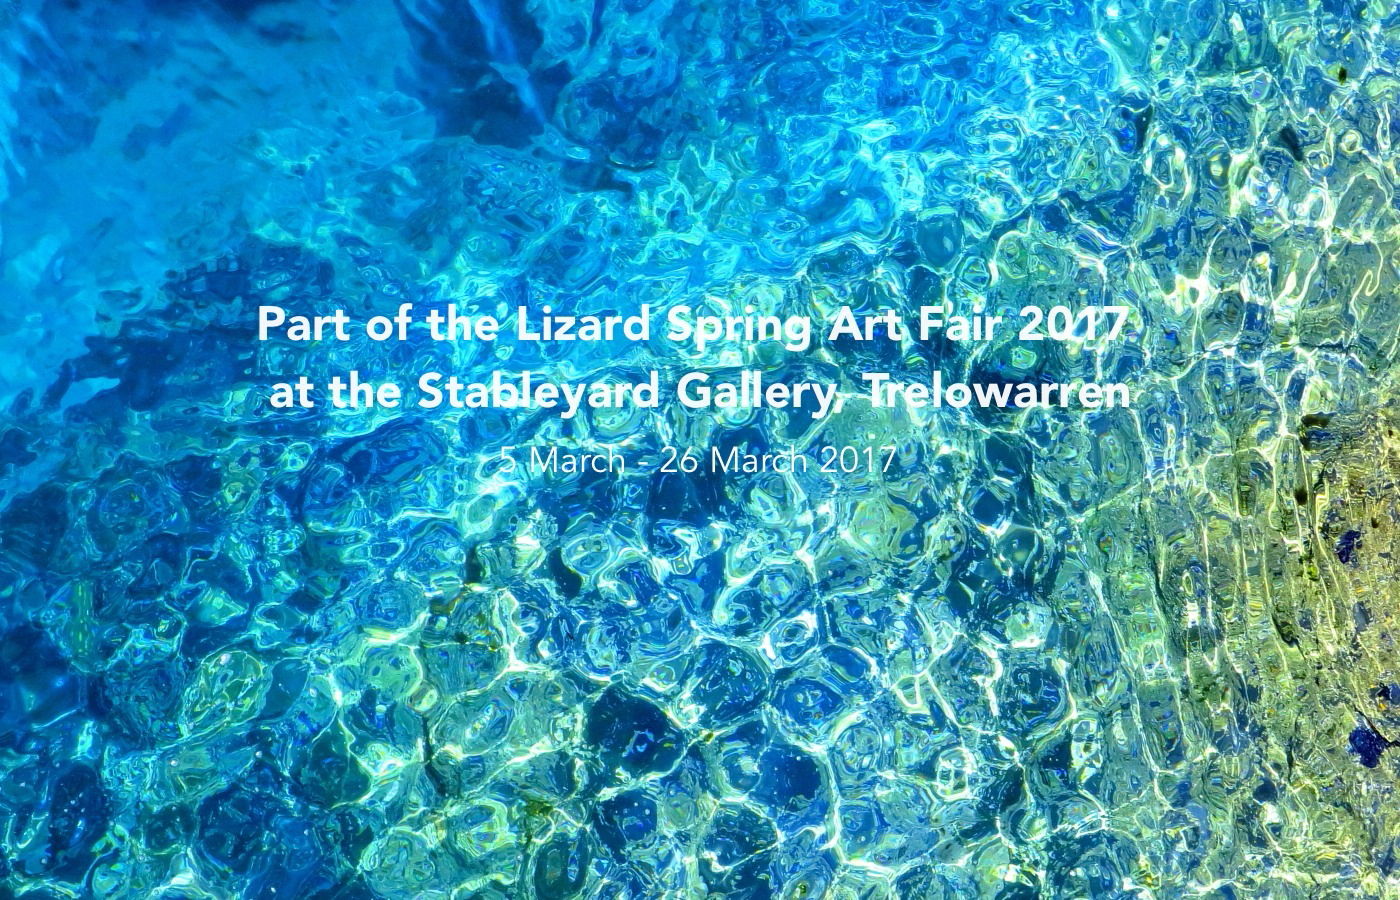 Lizard Spring Art Fair 2017